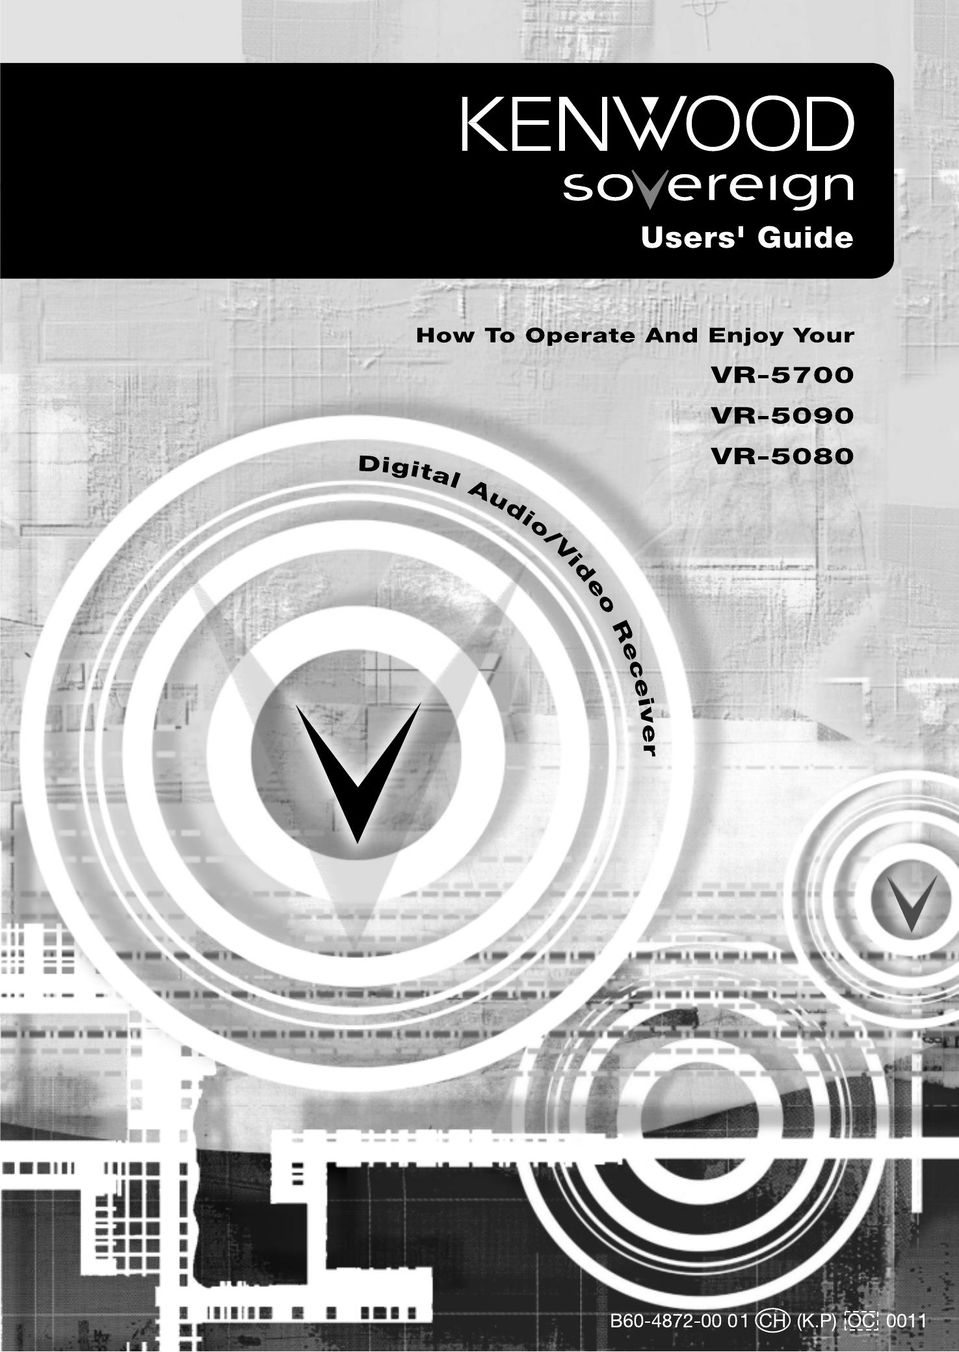 Kenwood VR-5080 DVR User Manual